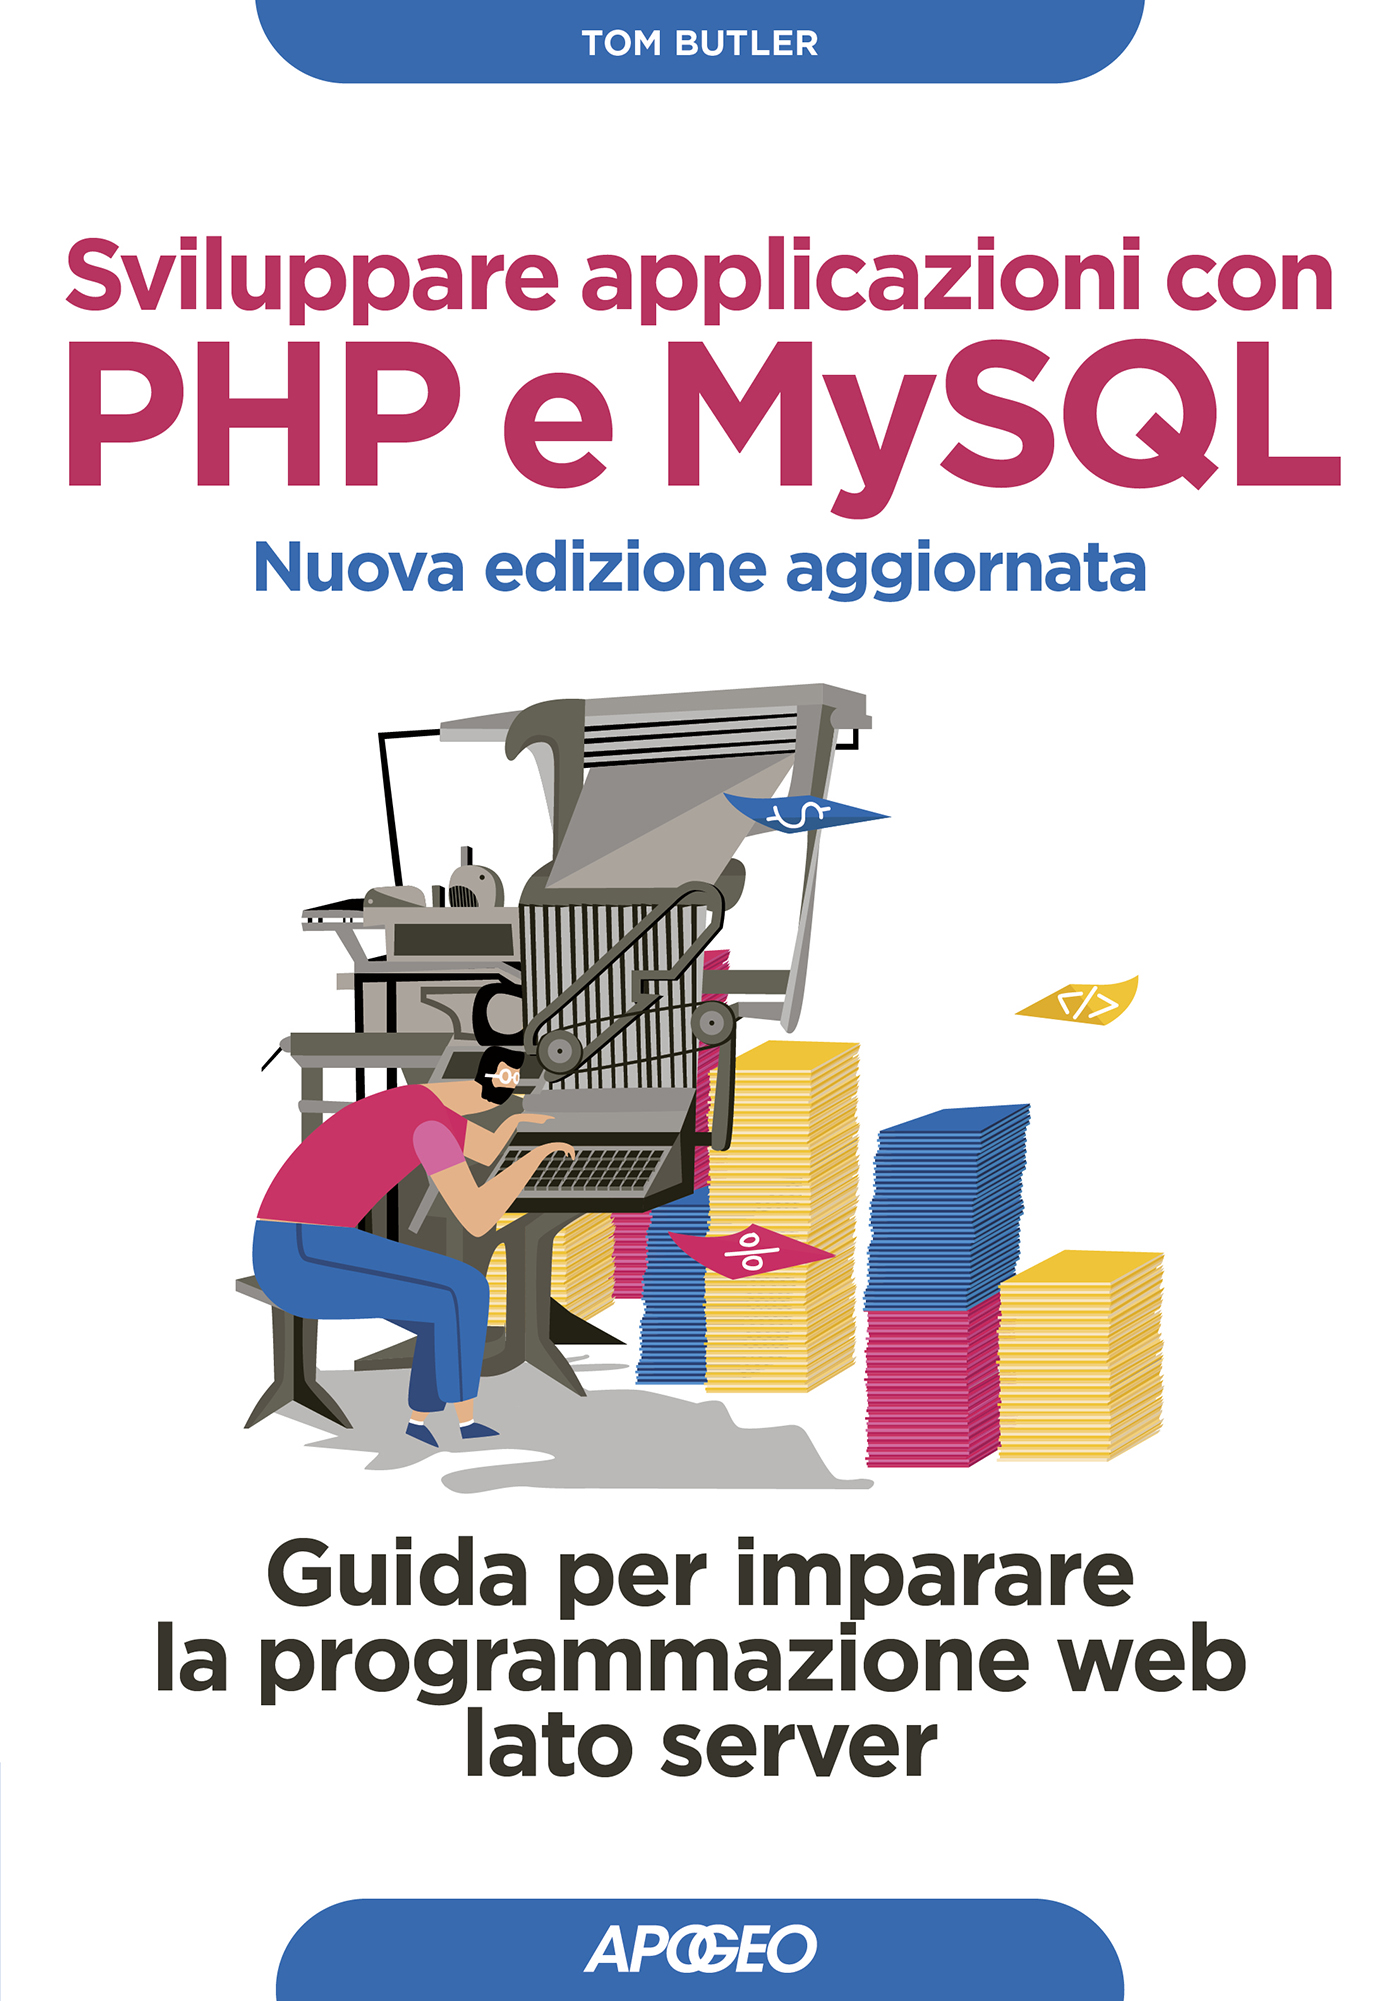 Sviluppare applicazioni con PHP e MySQL – copertina